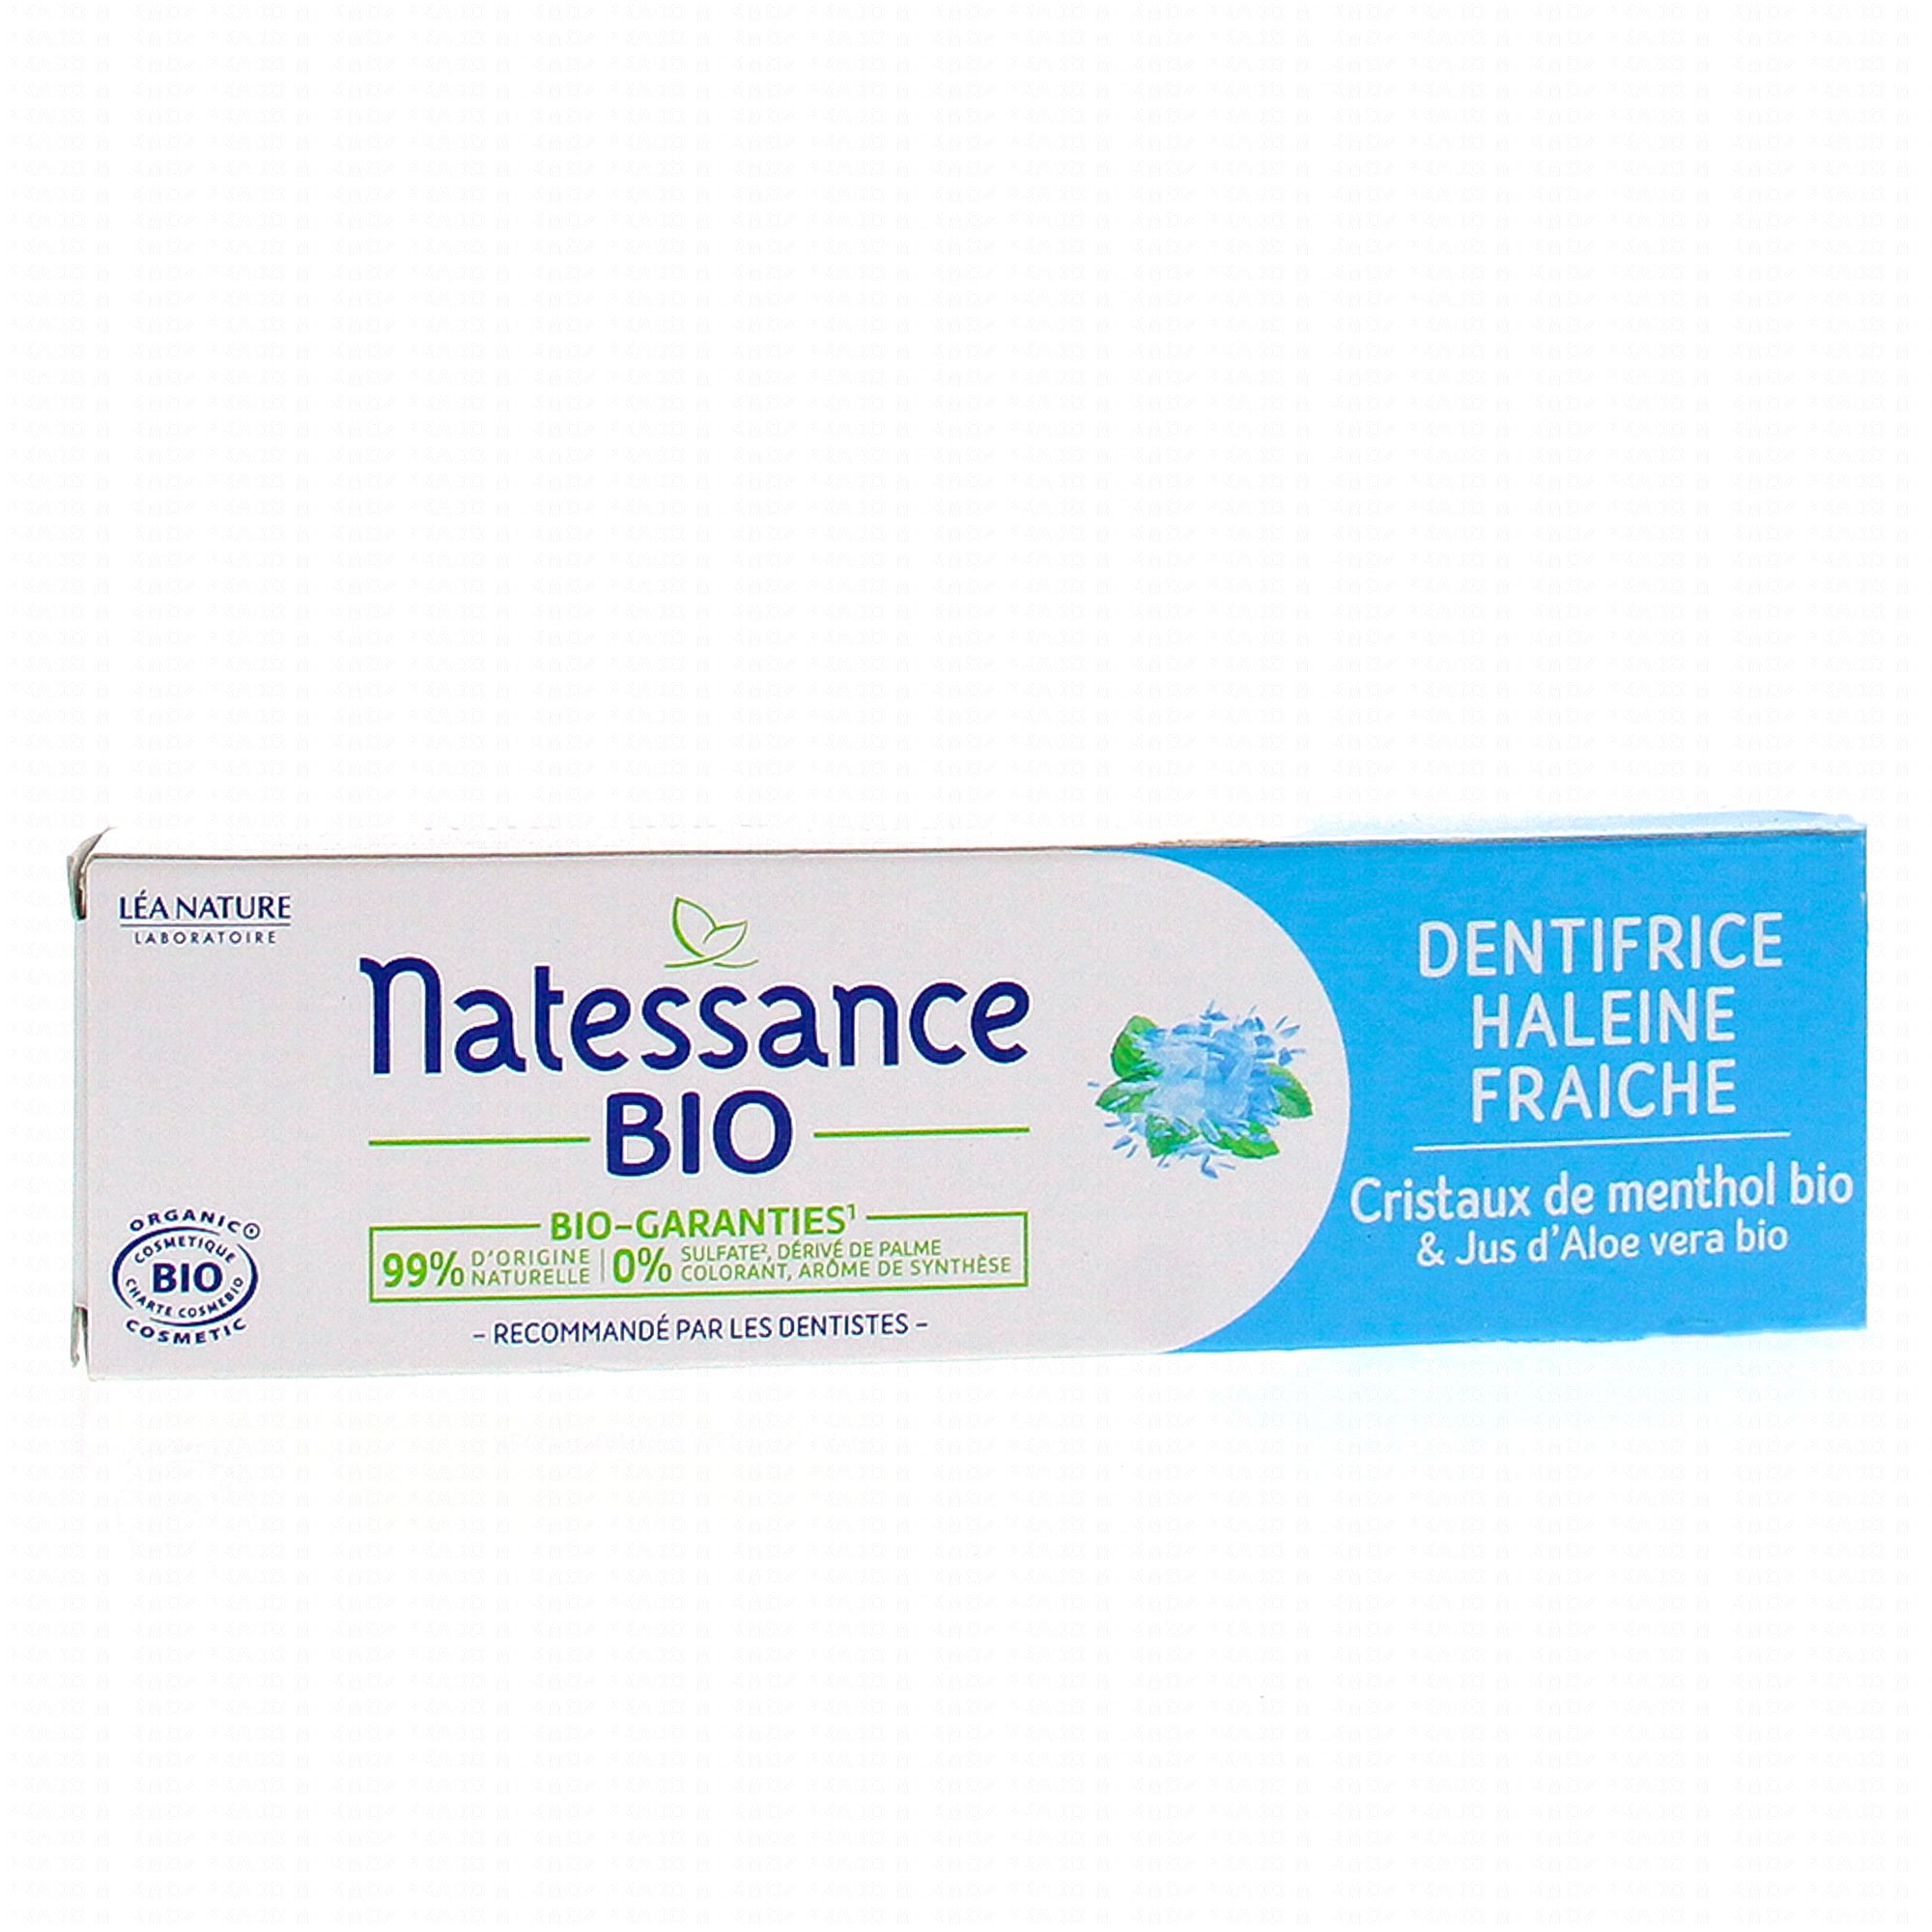 NATESSANCE Dentifrice haleine fraiche bio 75ml - Parapharmacie Prado Mermoz